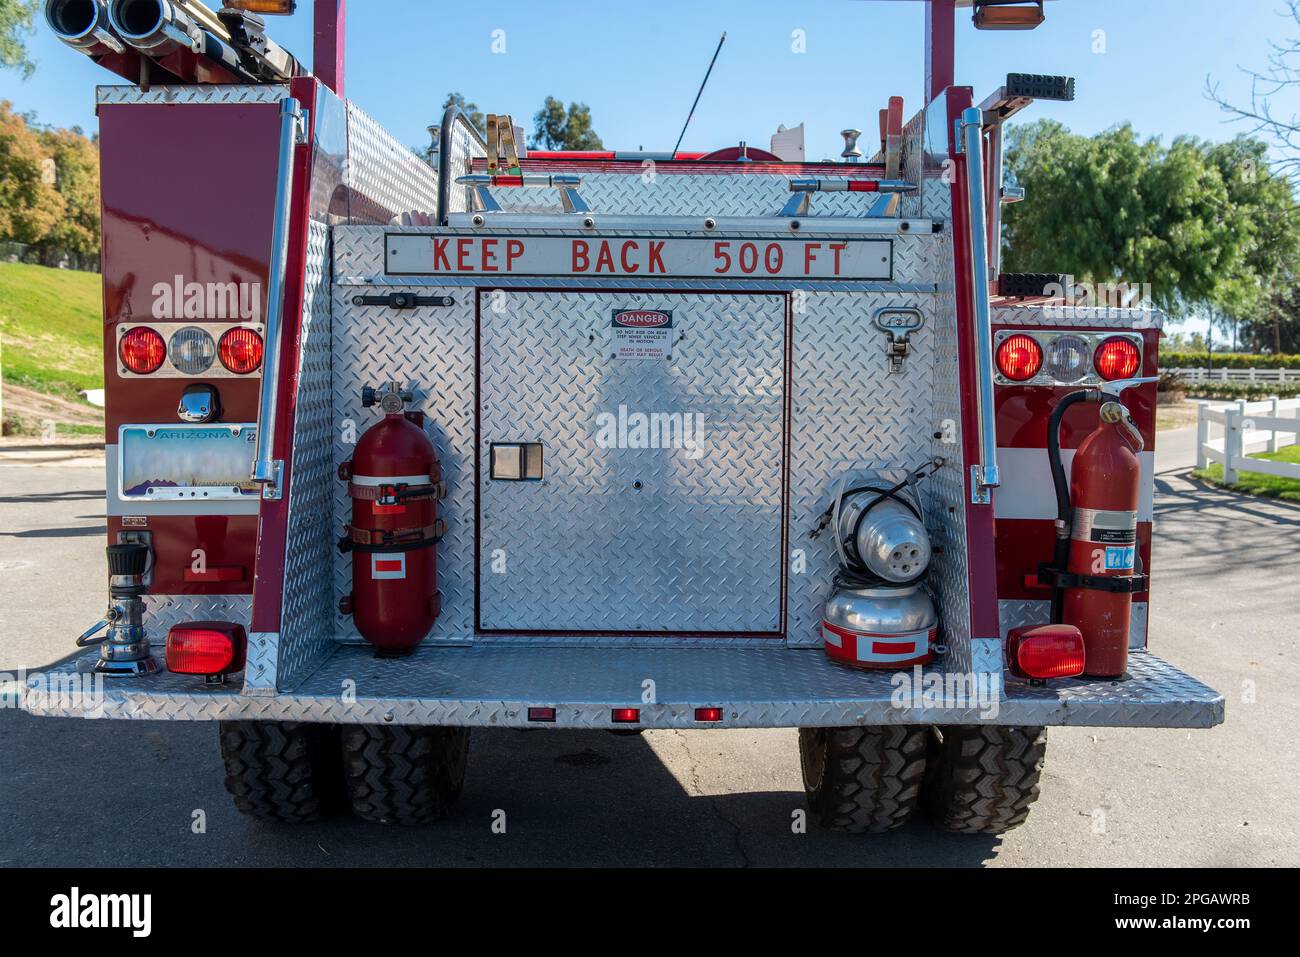 Das Heck des schweren Feuerwehrautos ist mit beleuchteten und fahrbereiten Rückleuchten ausgestattet. Stockfoto